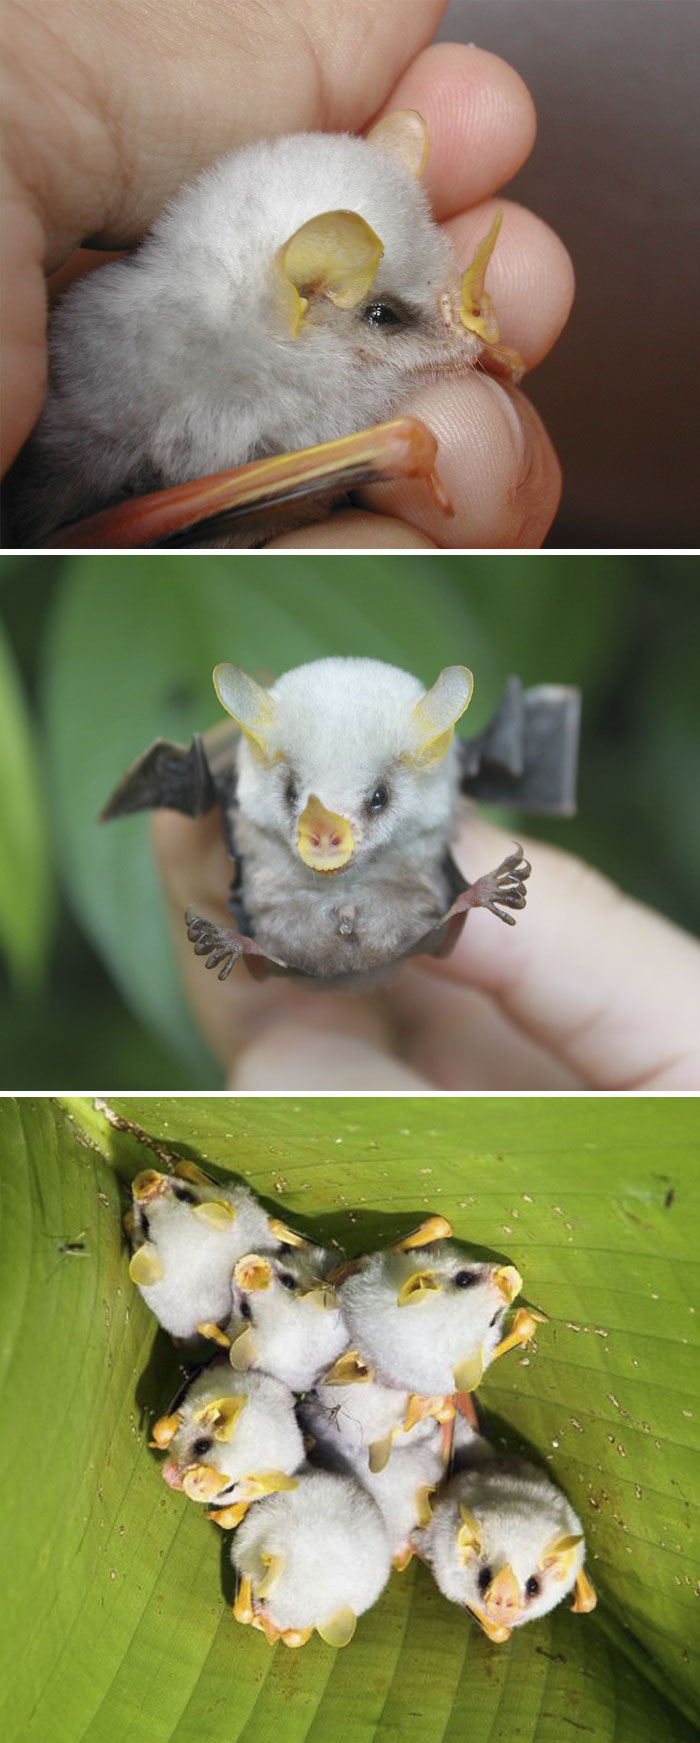 Fluffy Honduran White Bat Baby In Humans Hands 